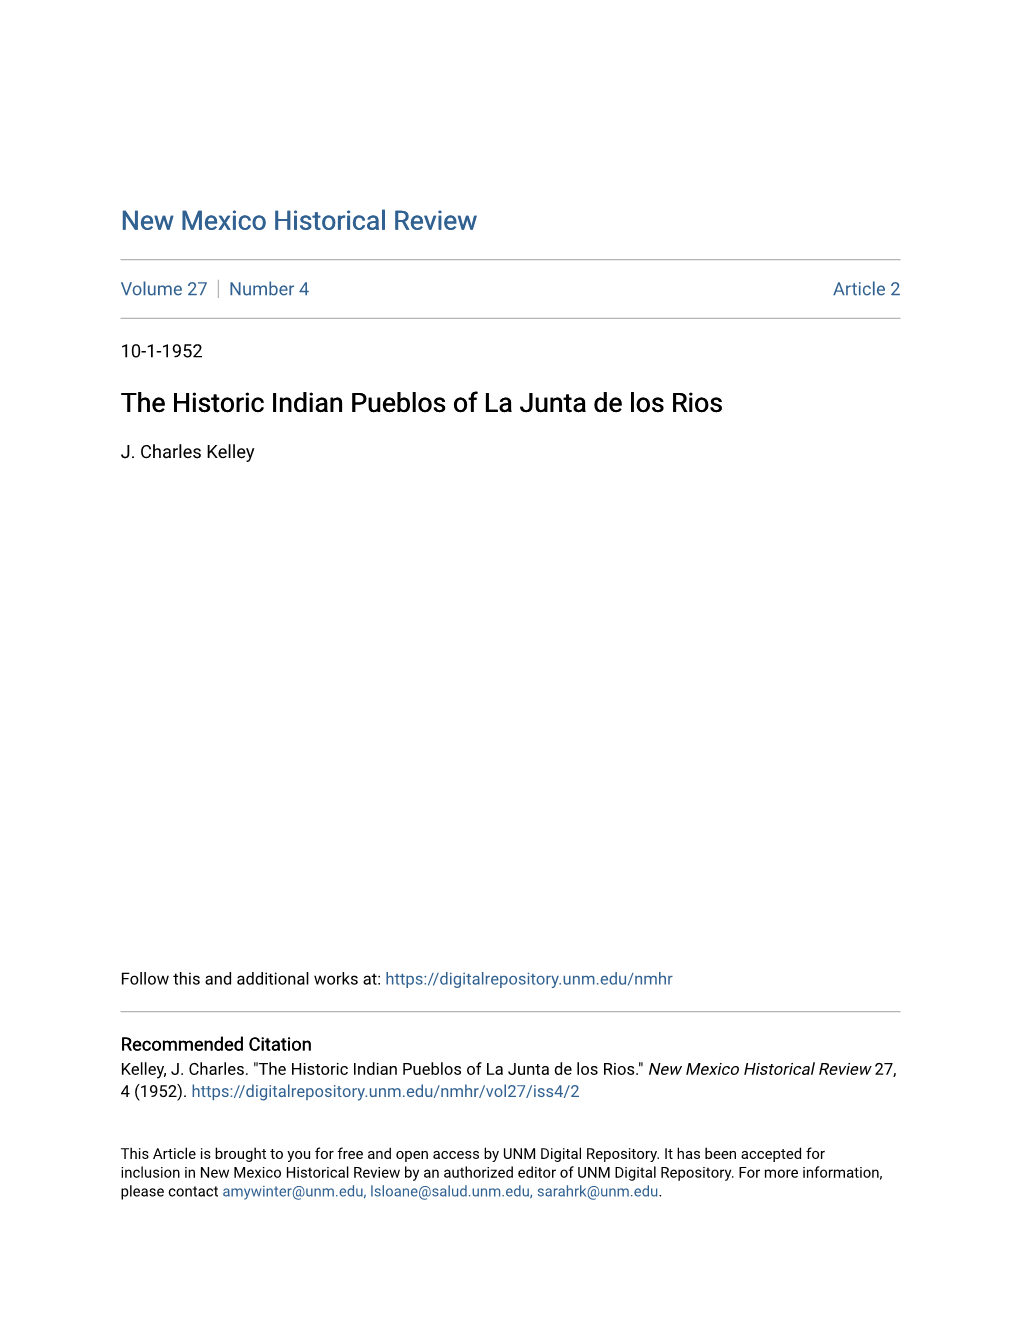 The Historic Indian Pueblos of La Junta De Los Rios